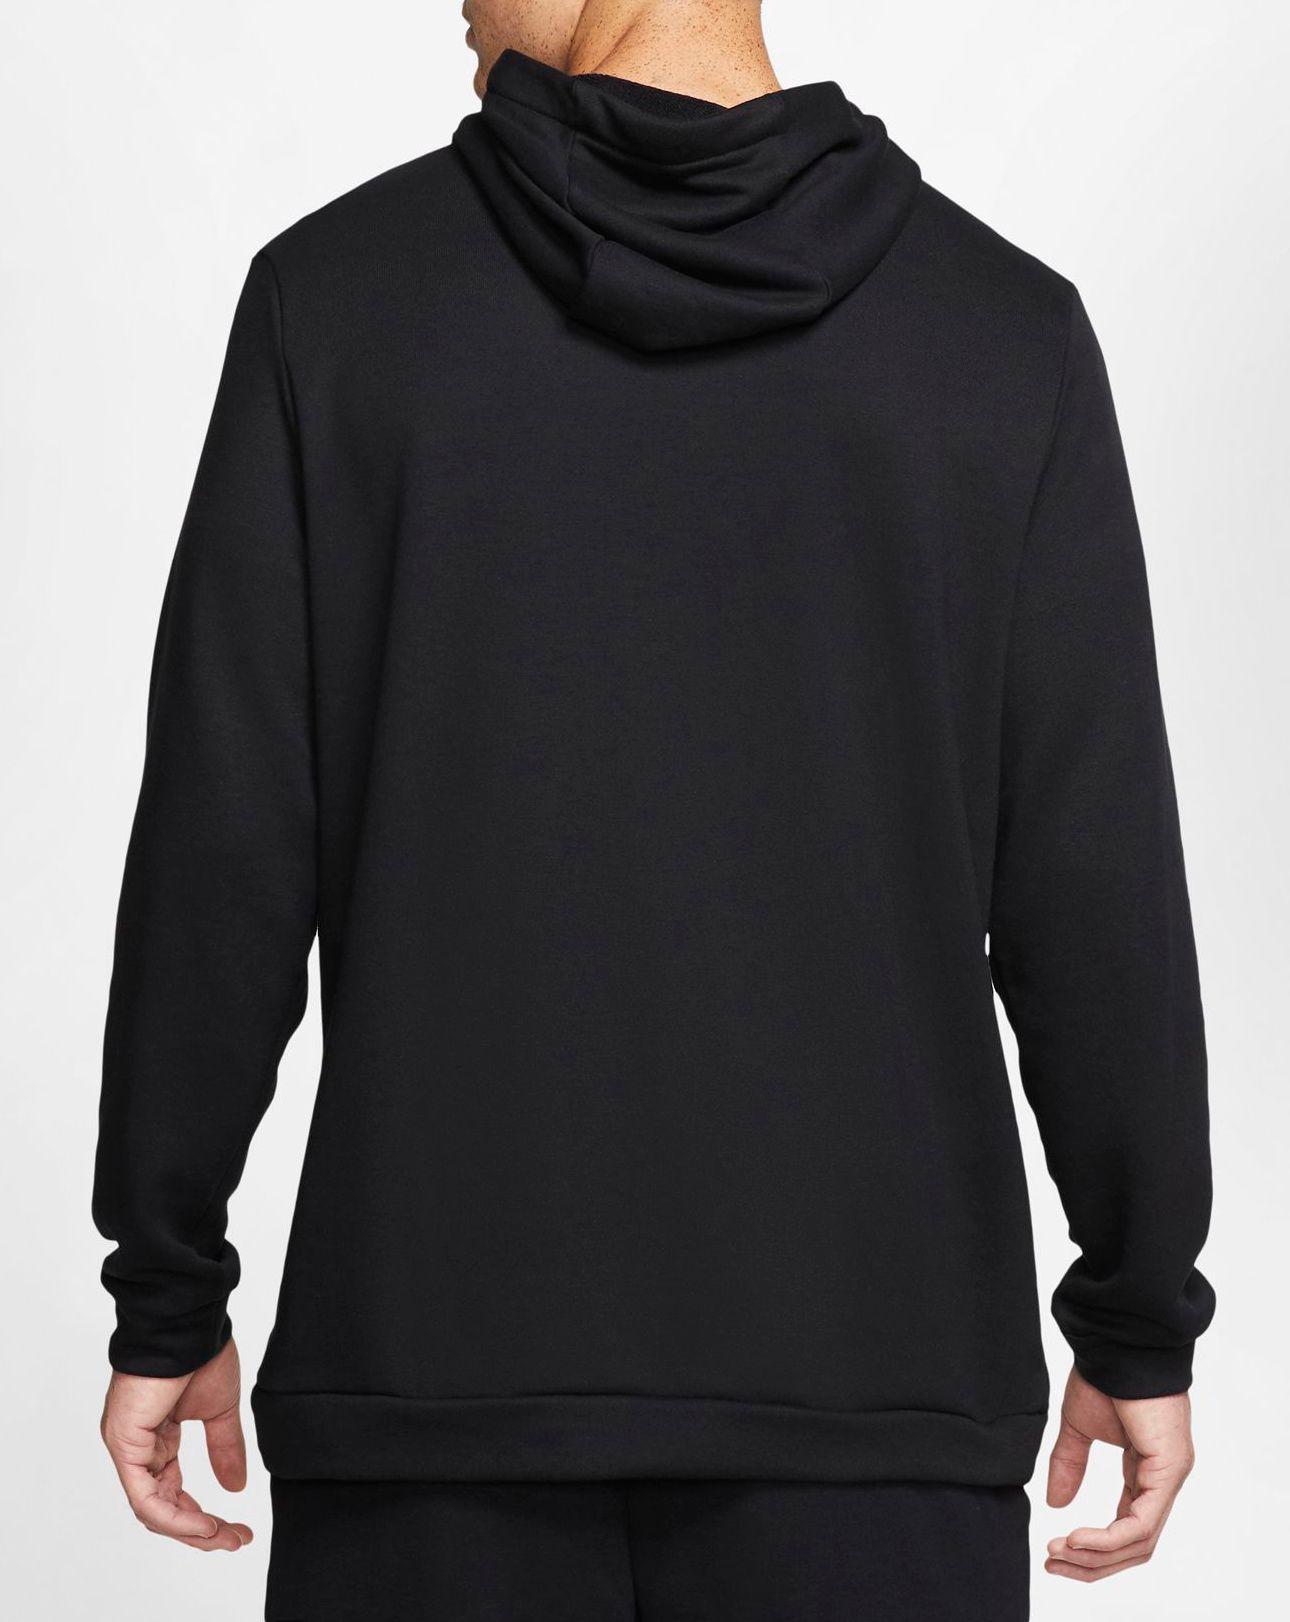 Nike Fleece Dri-fit Training Hoodie in Black for Men - Lyst